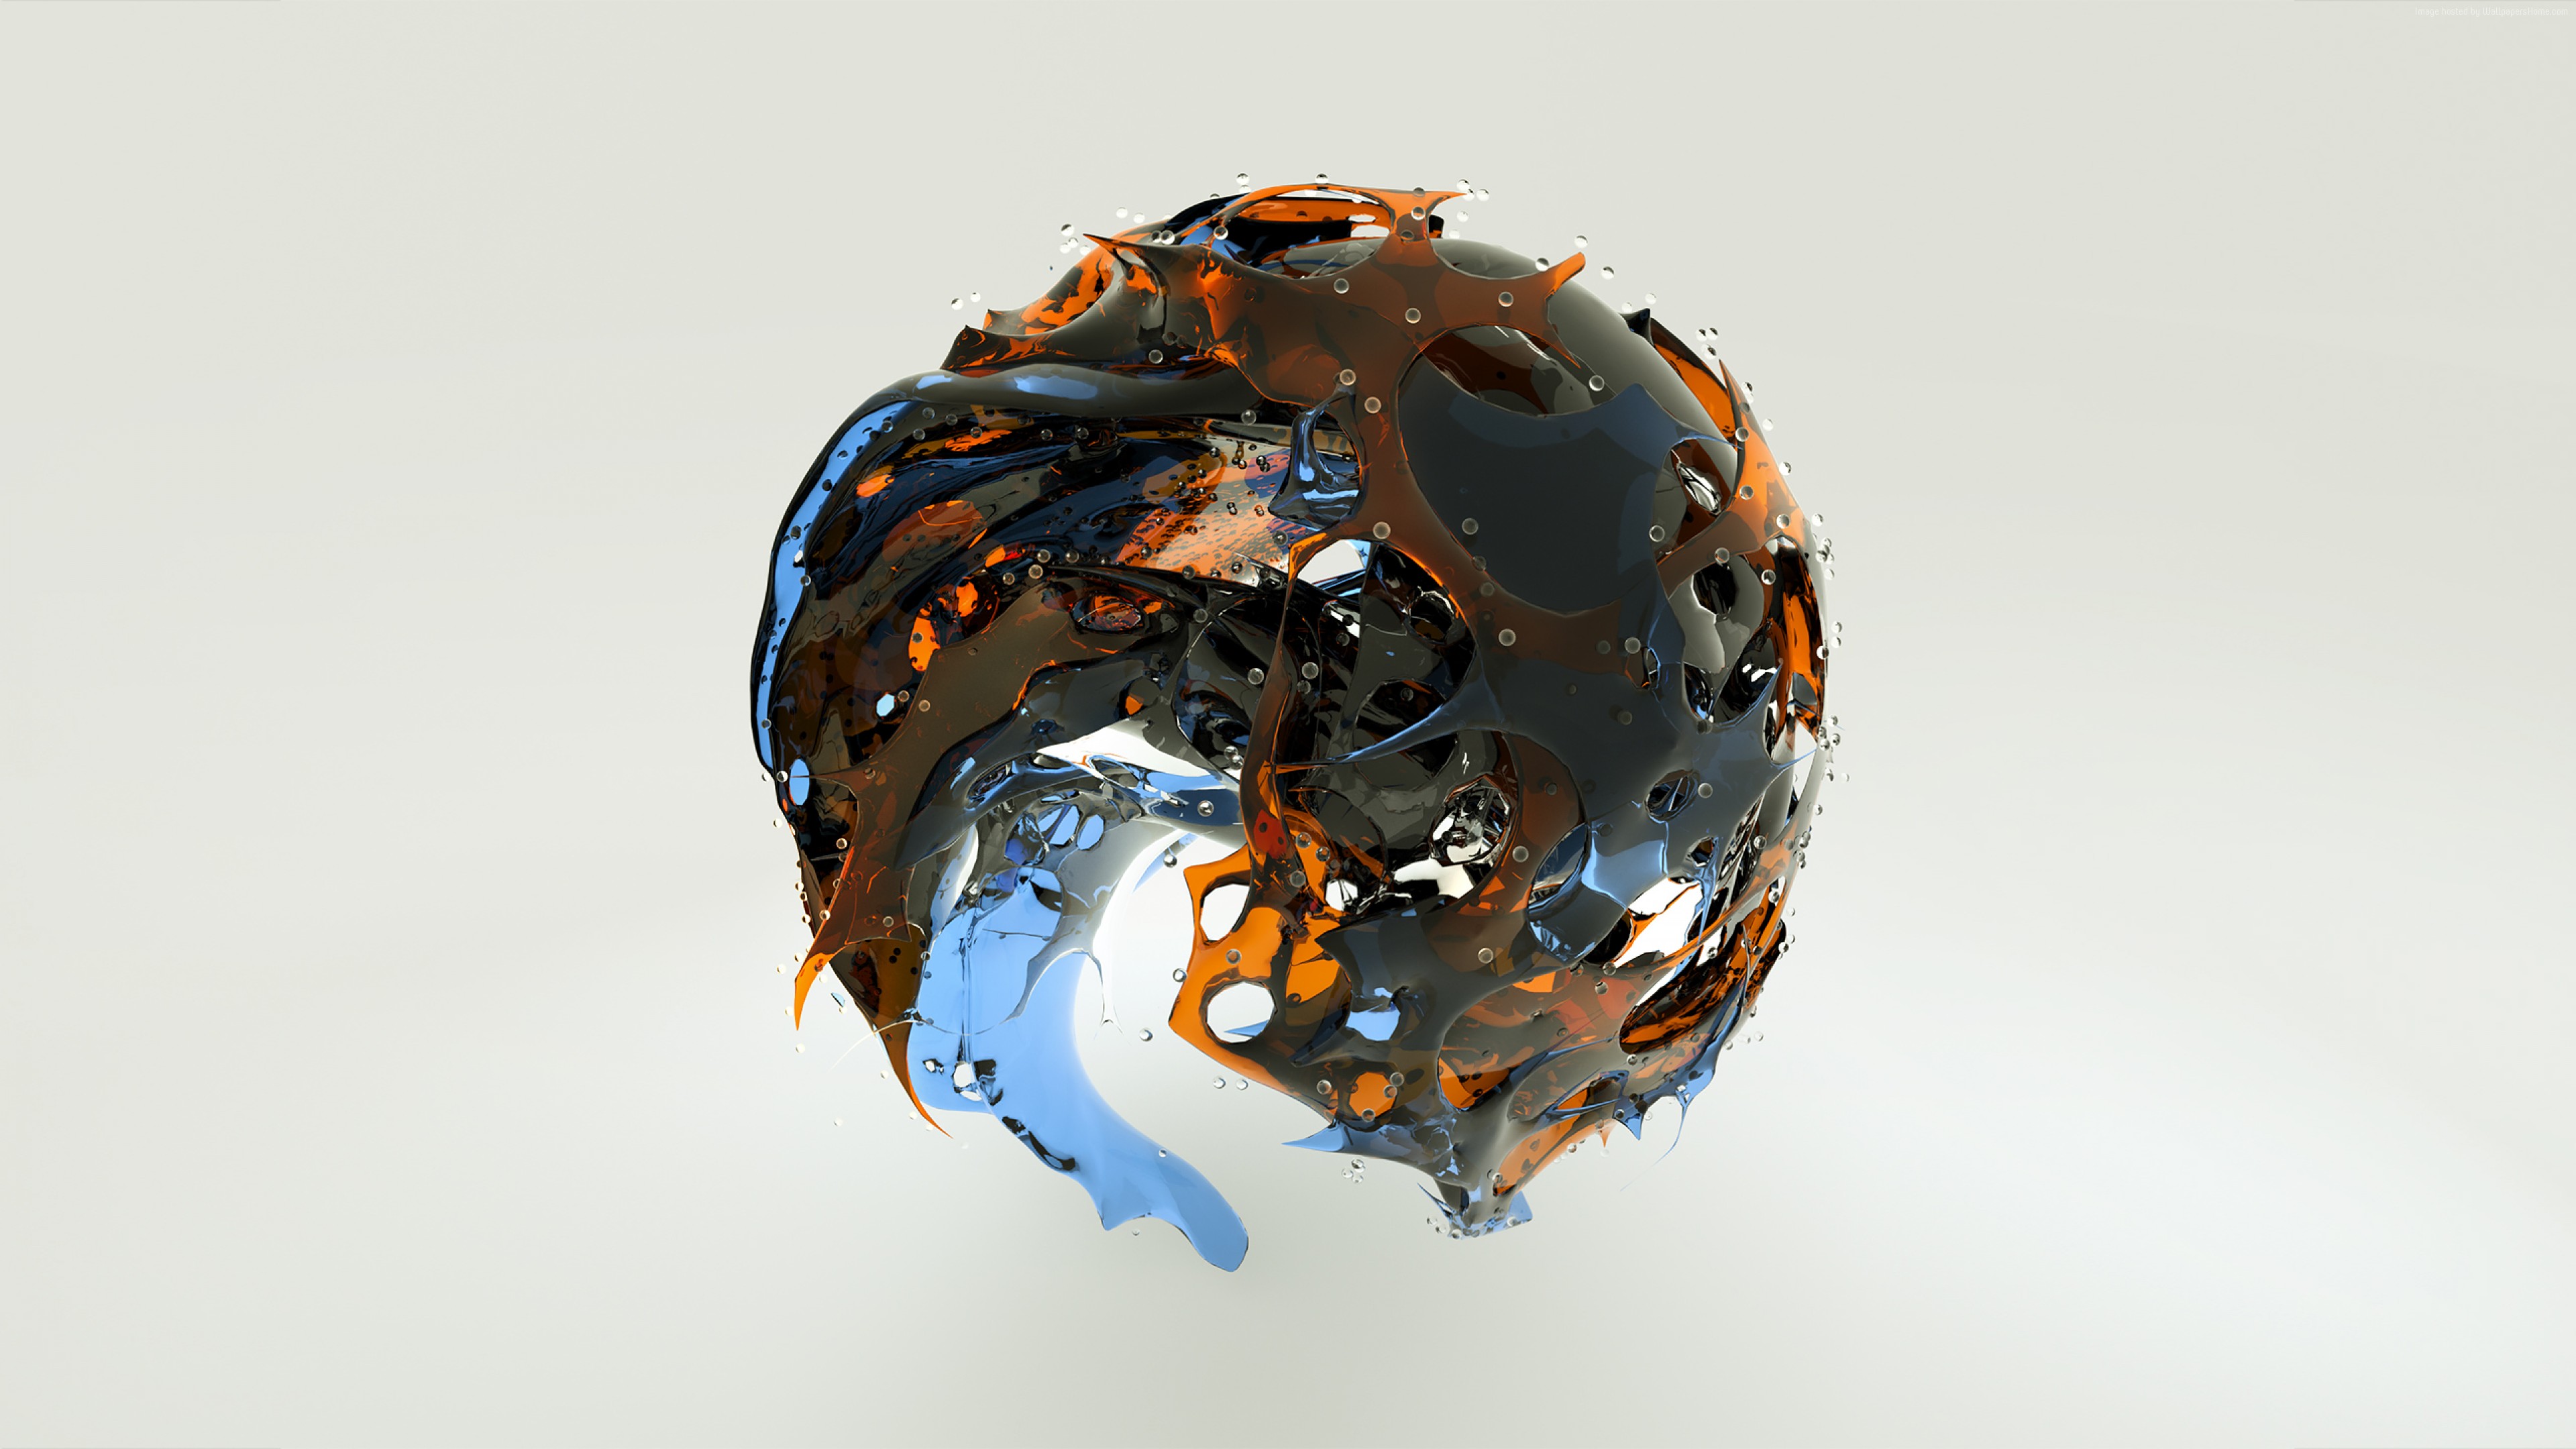 Wallpaper sphere, 3D, glass, HD, Abstract 4134710497 - Wallpaper sphere, 3D, glass, HD, Abstract - Sphere, HD, Glass, 3D